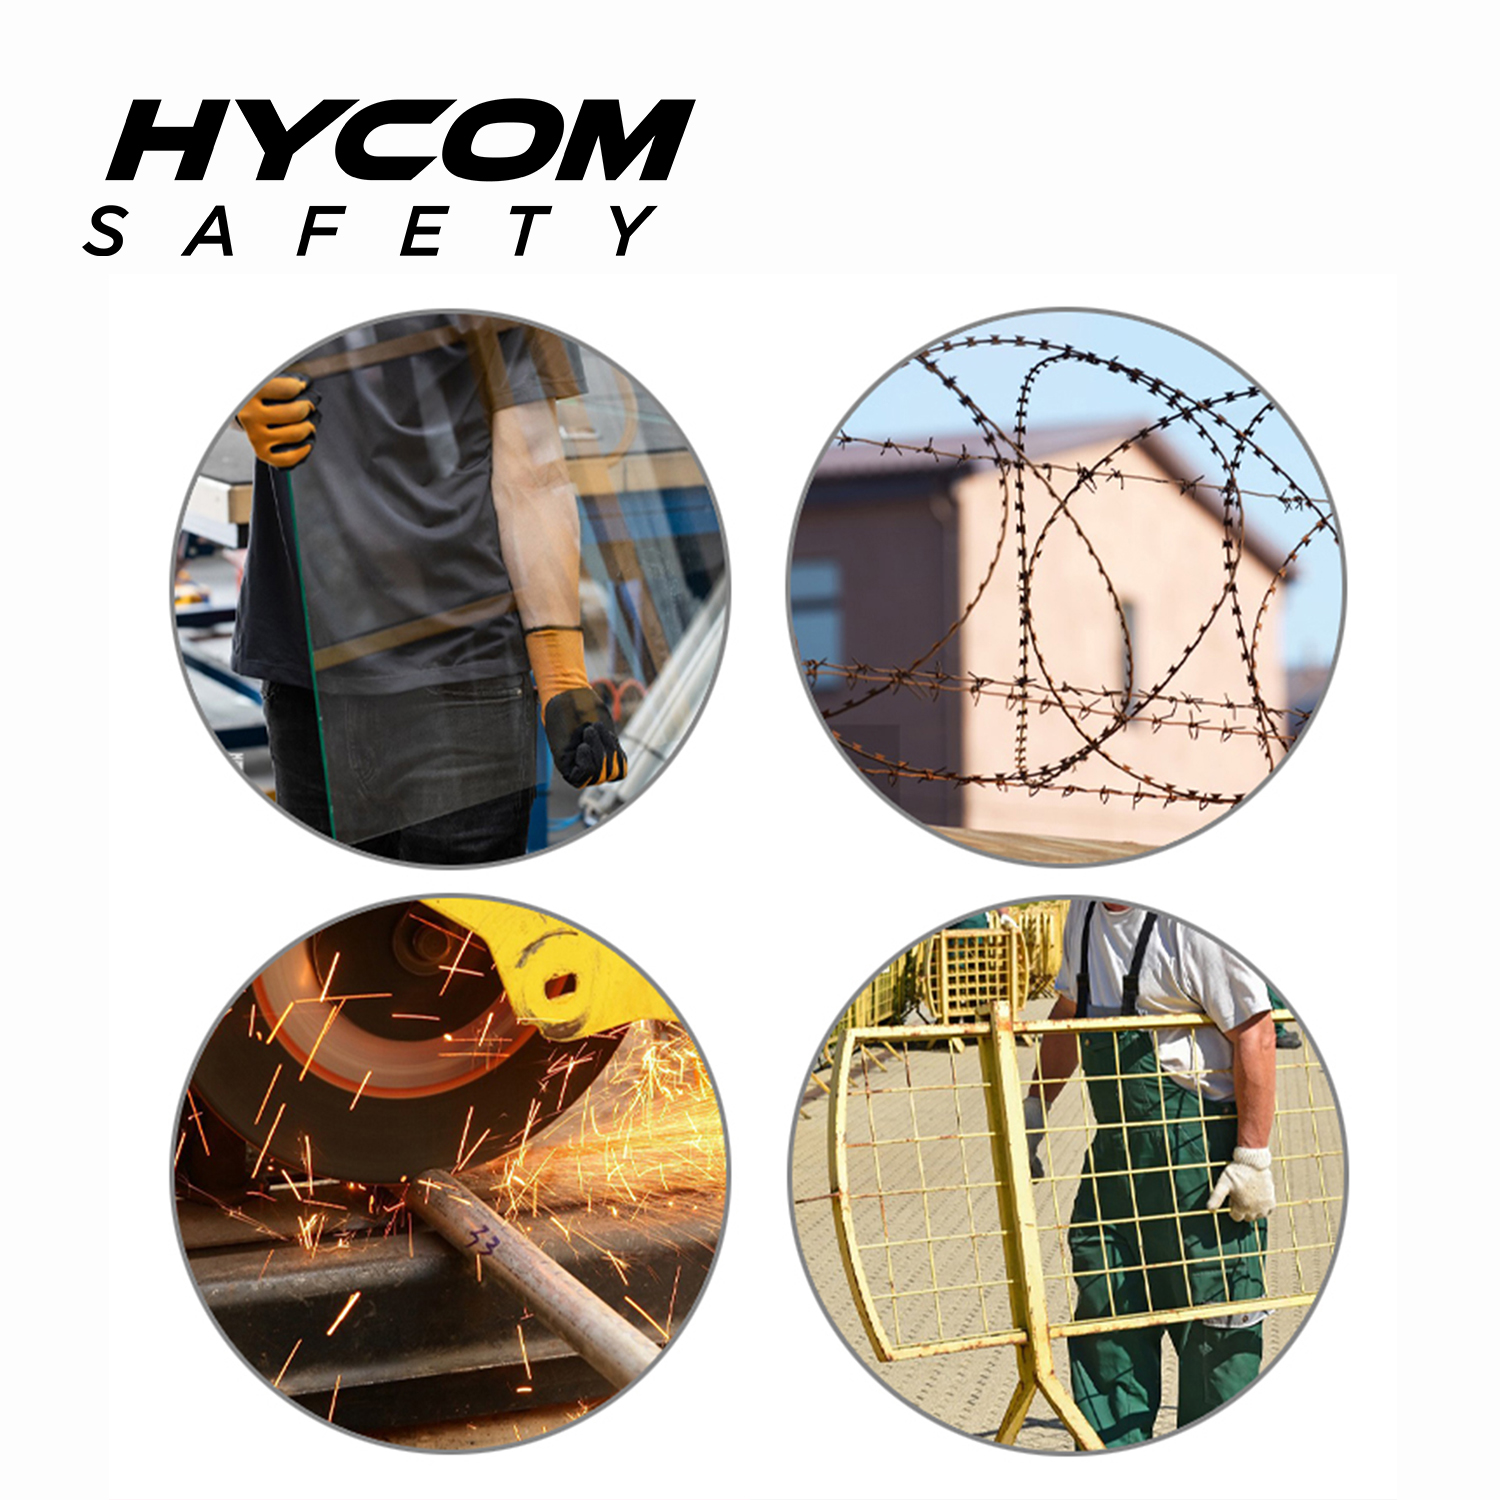 HYCOM ANSI 5 Schnittfeste Pullover-Kleidung mit gut sichtbarem reflektierendem Band und Daumenloch PSA-Kleidung